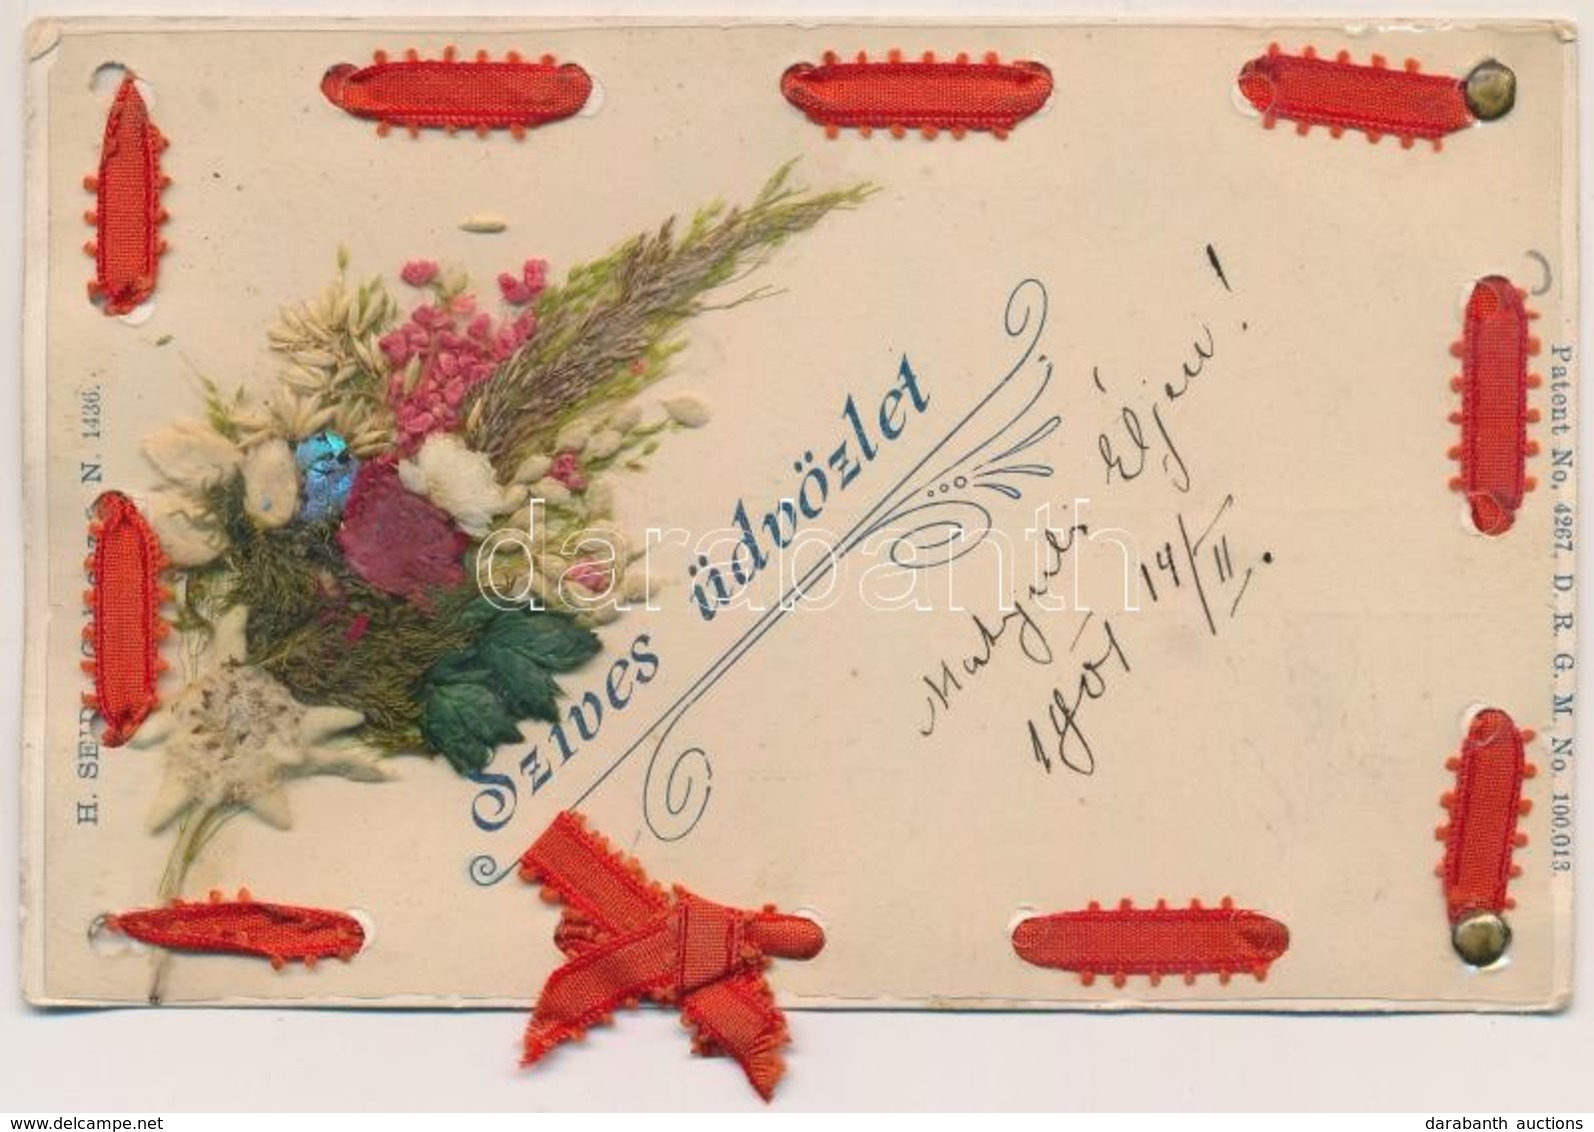 T2/T3 Szíves üdvözlet. Élővirágos üdvözlőlap / Greeting Card With Real Flower. H. Seidl, Gablonz Patent No. 4267. DRGM N - Unclassified